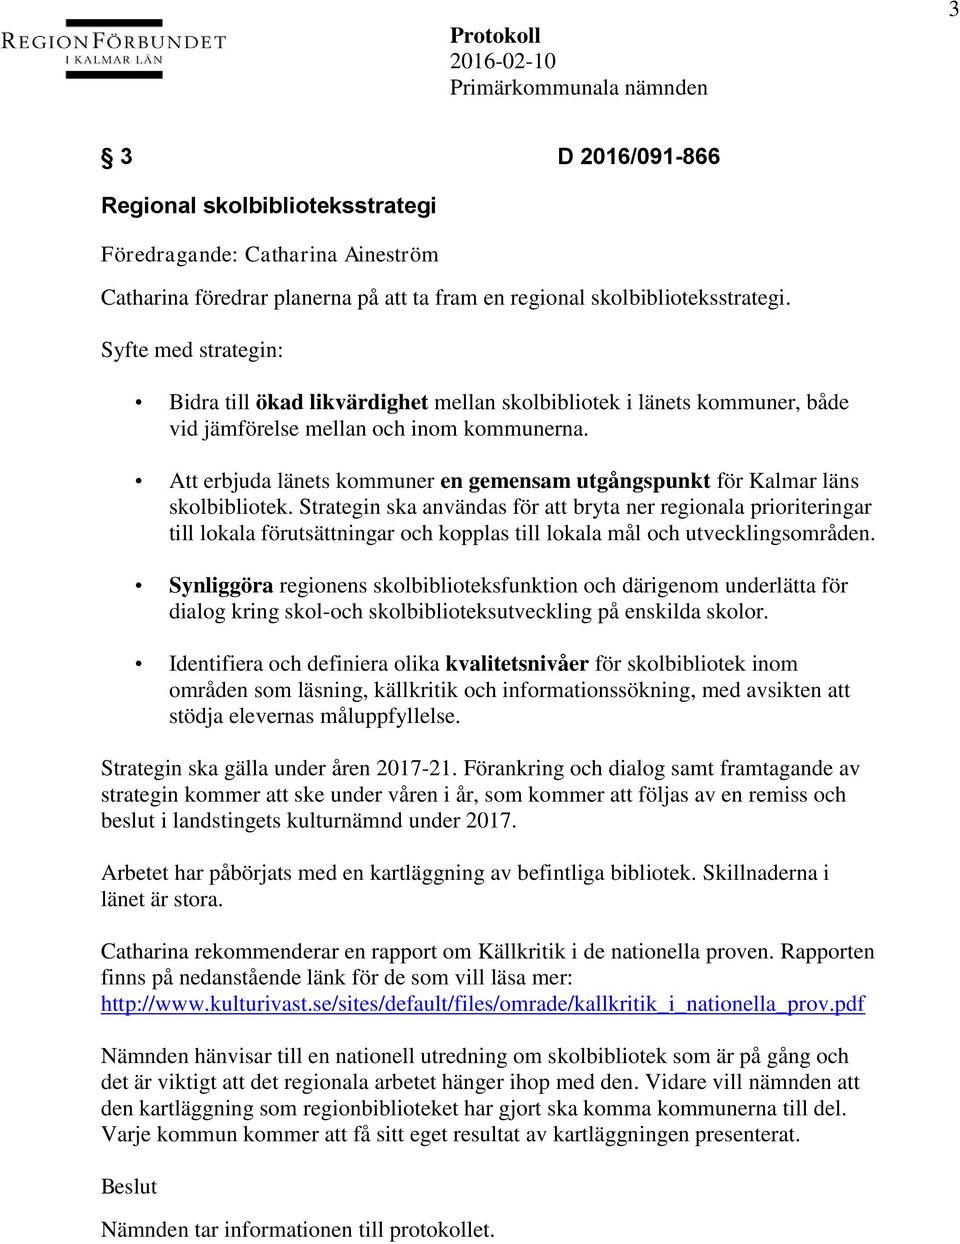 Att erbjuda länets kommuner en gemensam utgångspunkt för Kalmar läns skolbibliotek.